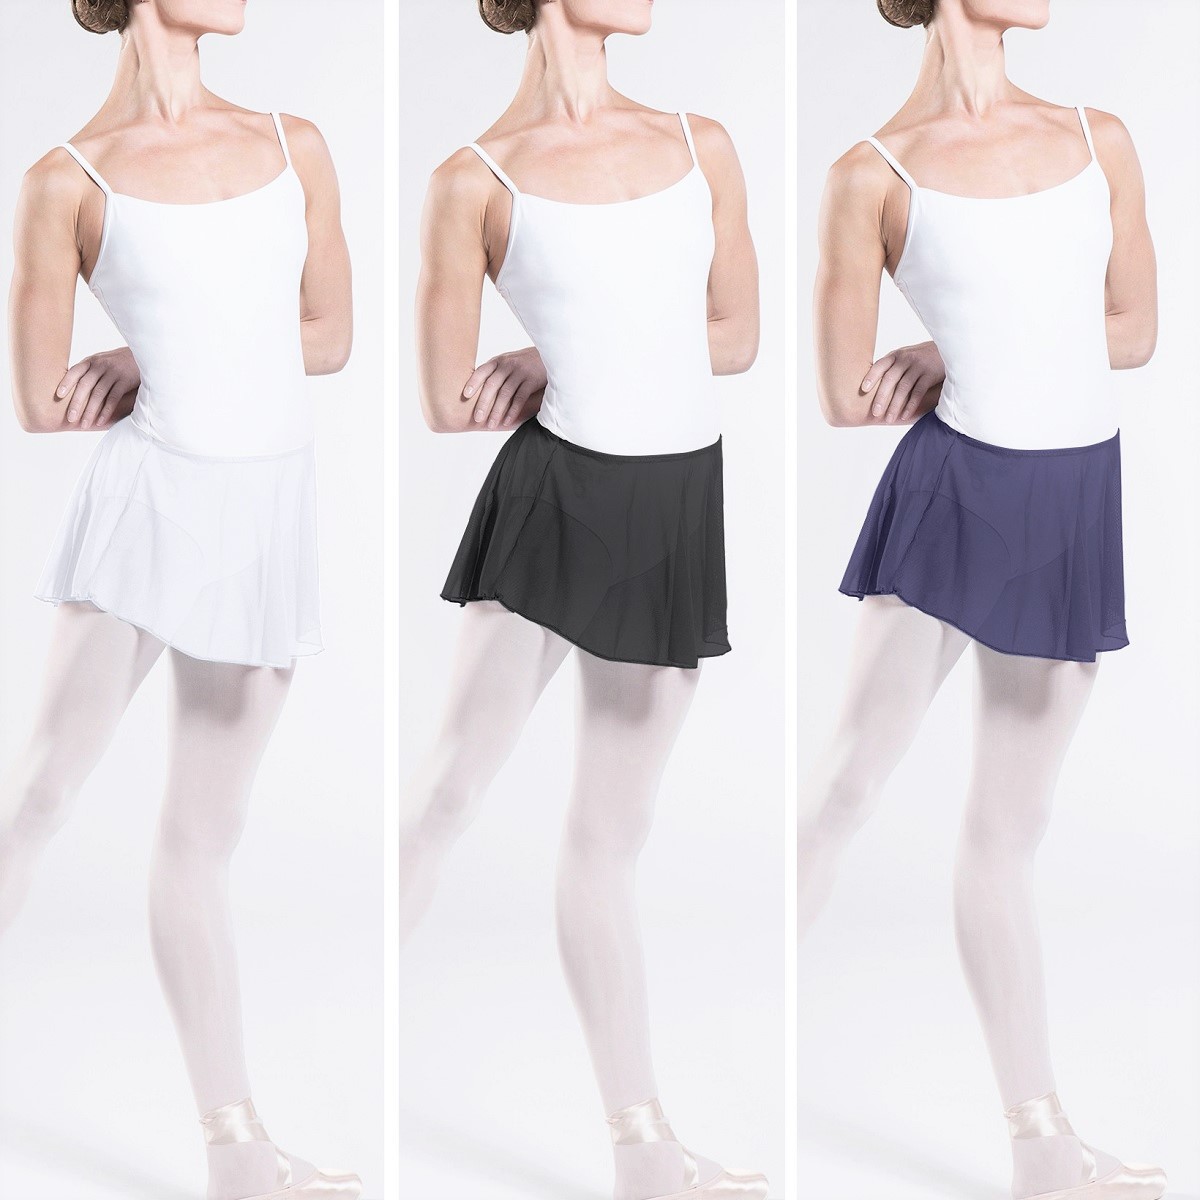 バレエ用品スカートのバレエ用衣料／トップス・ボトムスなどで、人気のウェアモア DAPHNE プルオンスカートをダンスケイトは通信販売しています。